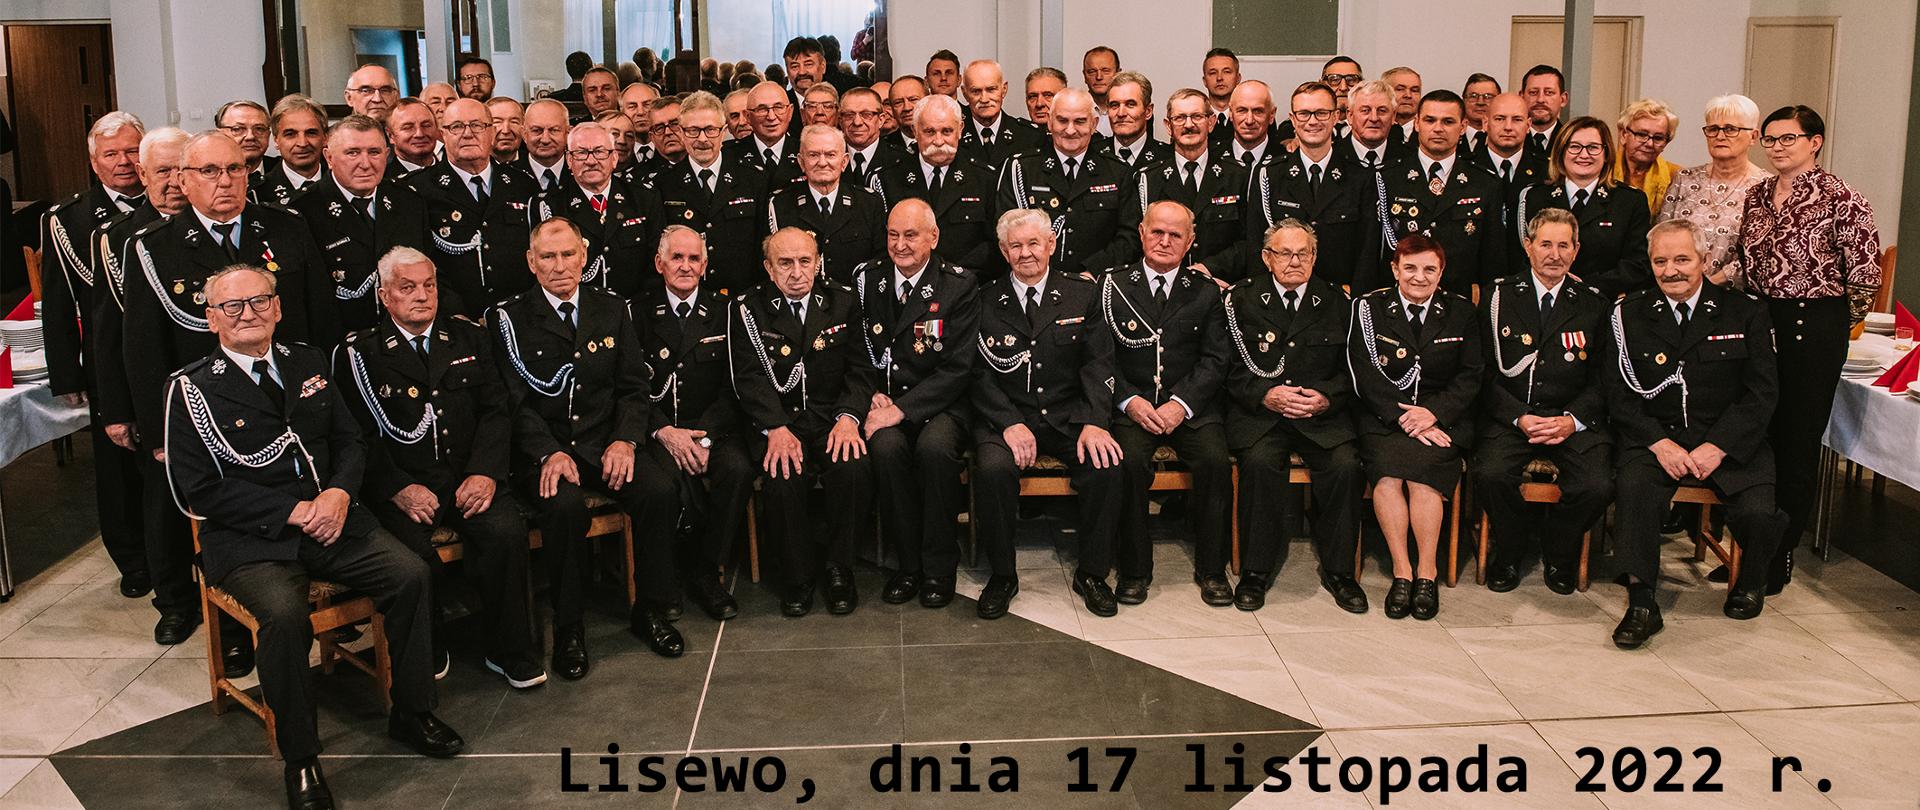 Na zdjęciu znajdują się wszyscy uczestnicy Powiatowego Zjazdu Seniorów Pożarnictwa z terenu powiatu chełmińskiego. Zdjęcie wykonano w restauracji "Nad Stawem" w Lisewie.